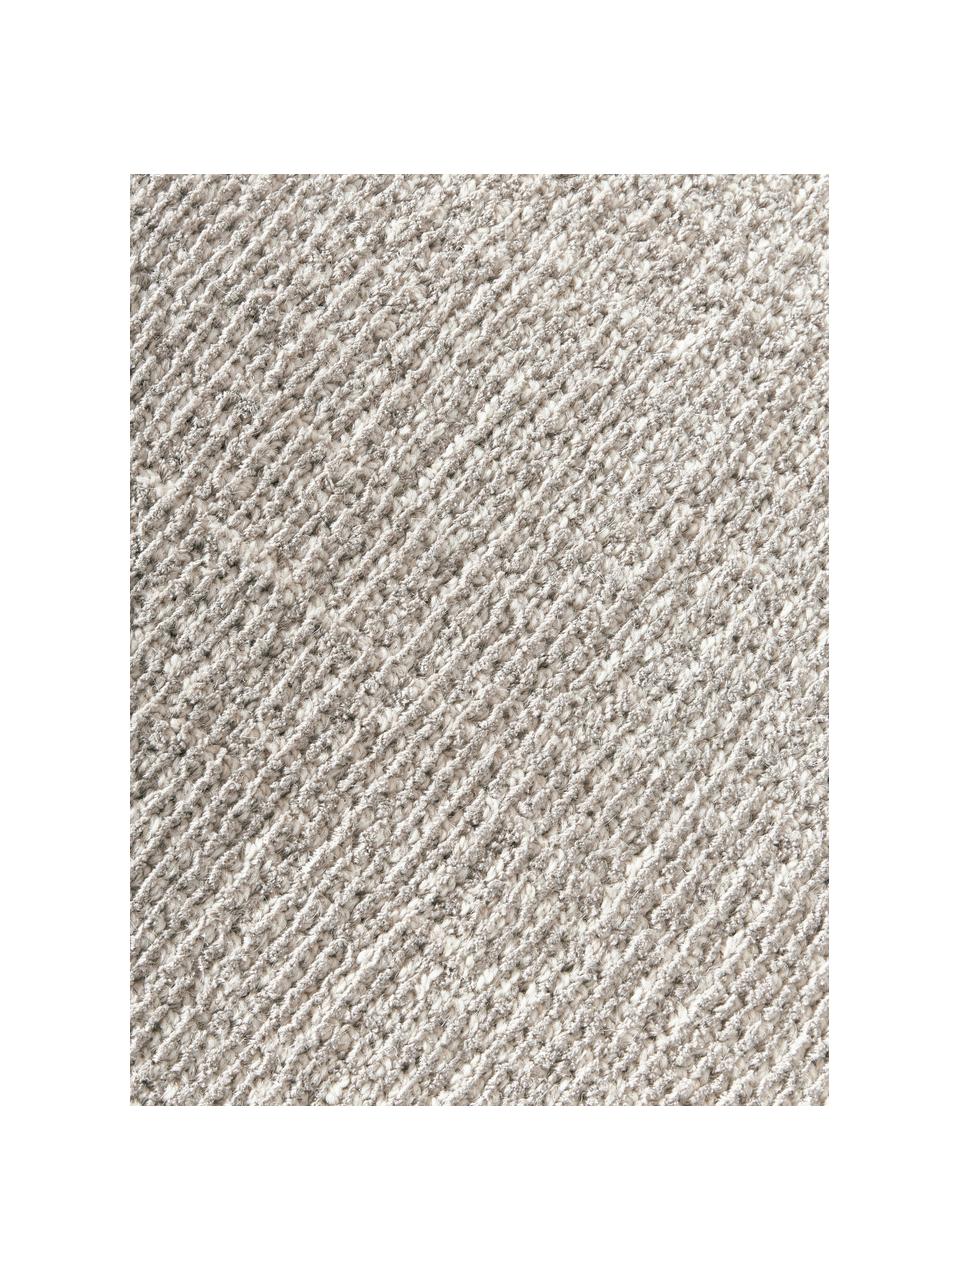 Tapis rond à poils ras tissé main Ainsley, 60 % polyester, certifié GRS
40 % laine, Gris clair, Ø 150 cm (taille M)